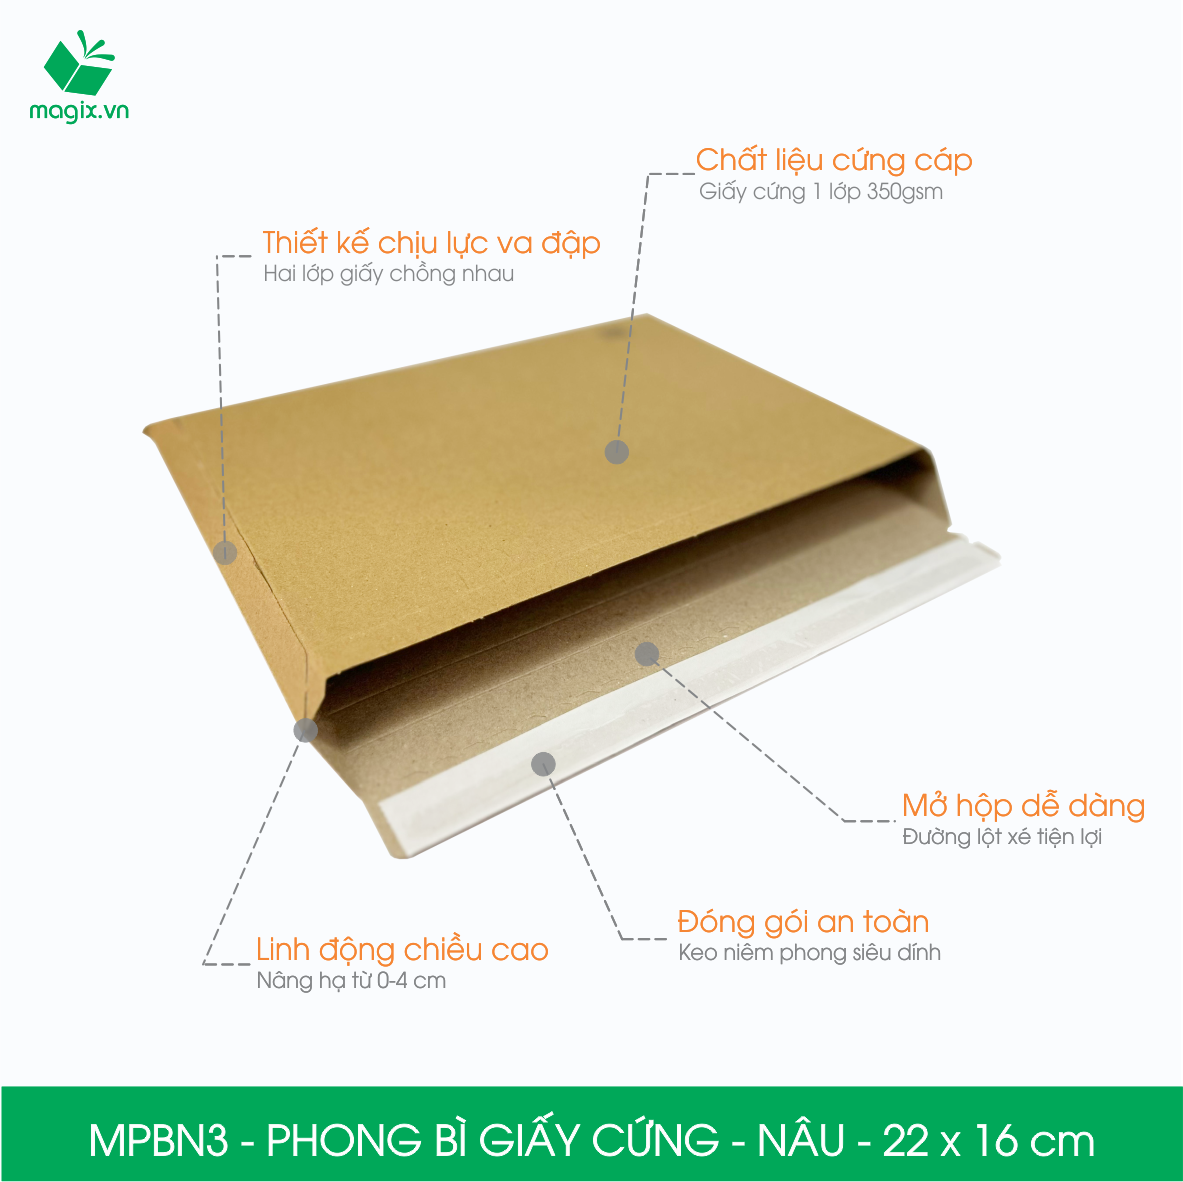 MPBN3 - 22x16 cm - Combo 60  phong bì giấy cứng đóng hàng màu nâu thay thế túi gói hàng